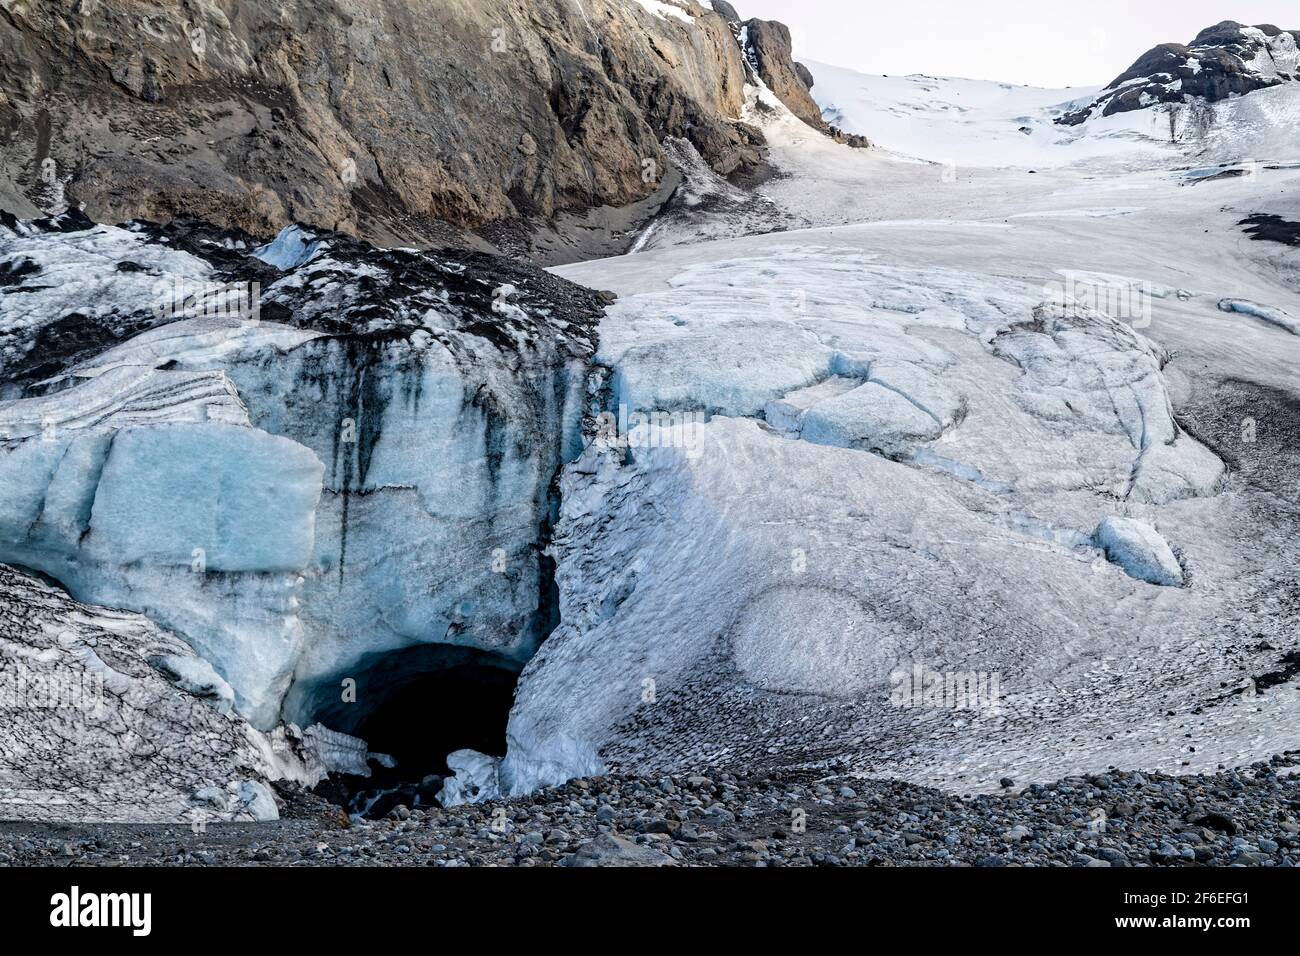 Gígjökull, Islanda. 18 maggio 2015. Gígjökull è uno dei due ghiacciai che discendono dalla calotta di ghiaccio principale di Eyjafjallajokull, situata in Islanda Foto Stock